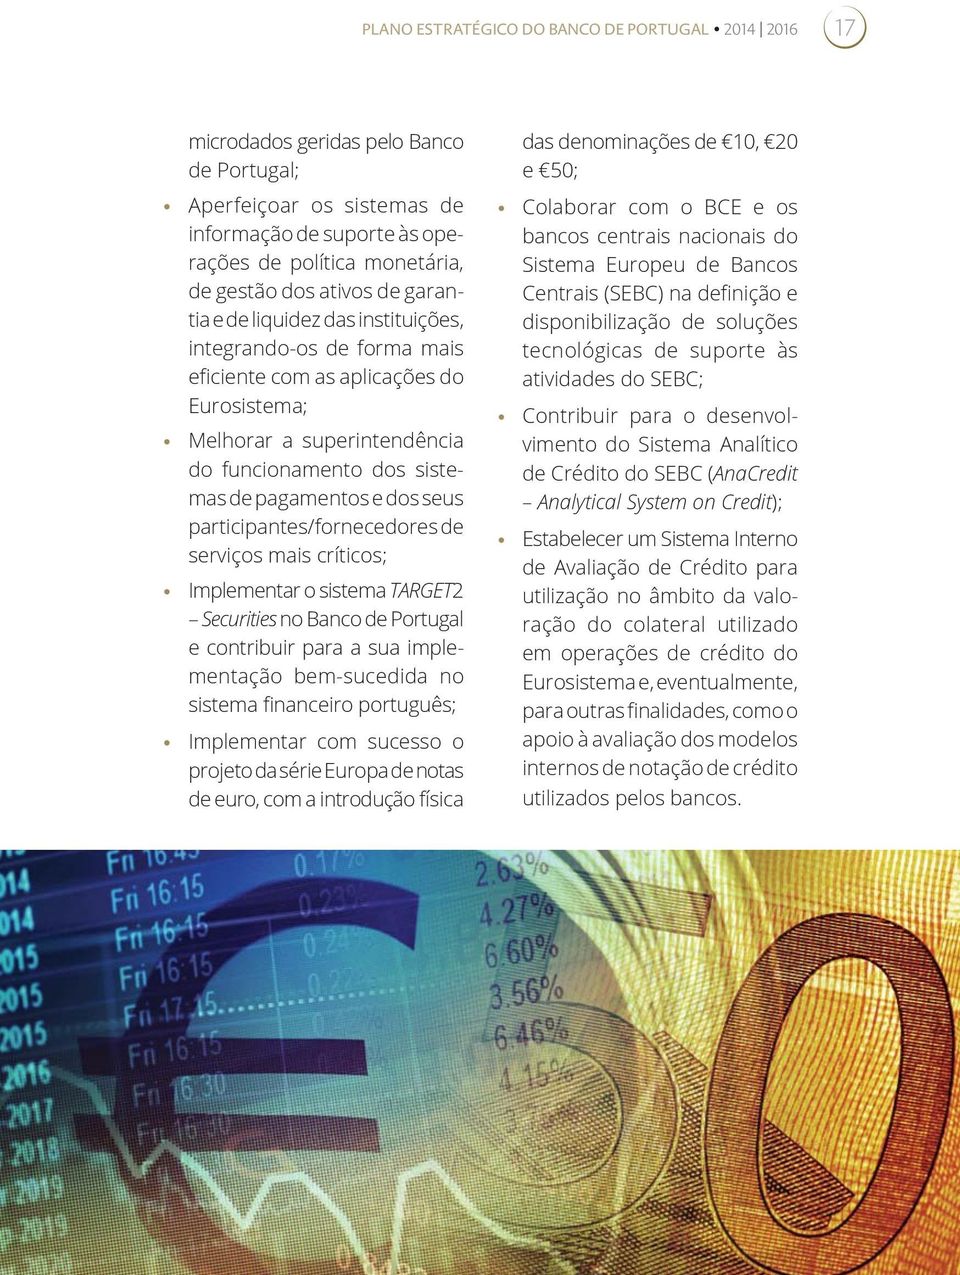 dos seus participantes/fornecedores de serviços mais críticos; Implementar o sistema TARGET2 Securities no Banco de Portugal e contribuir para a sua implementação bem-sucedida no sistema financeiro